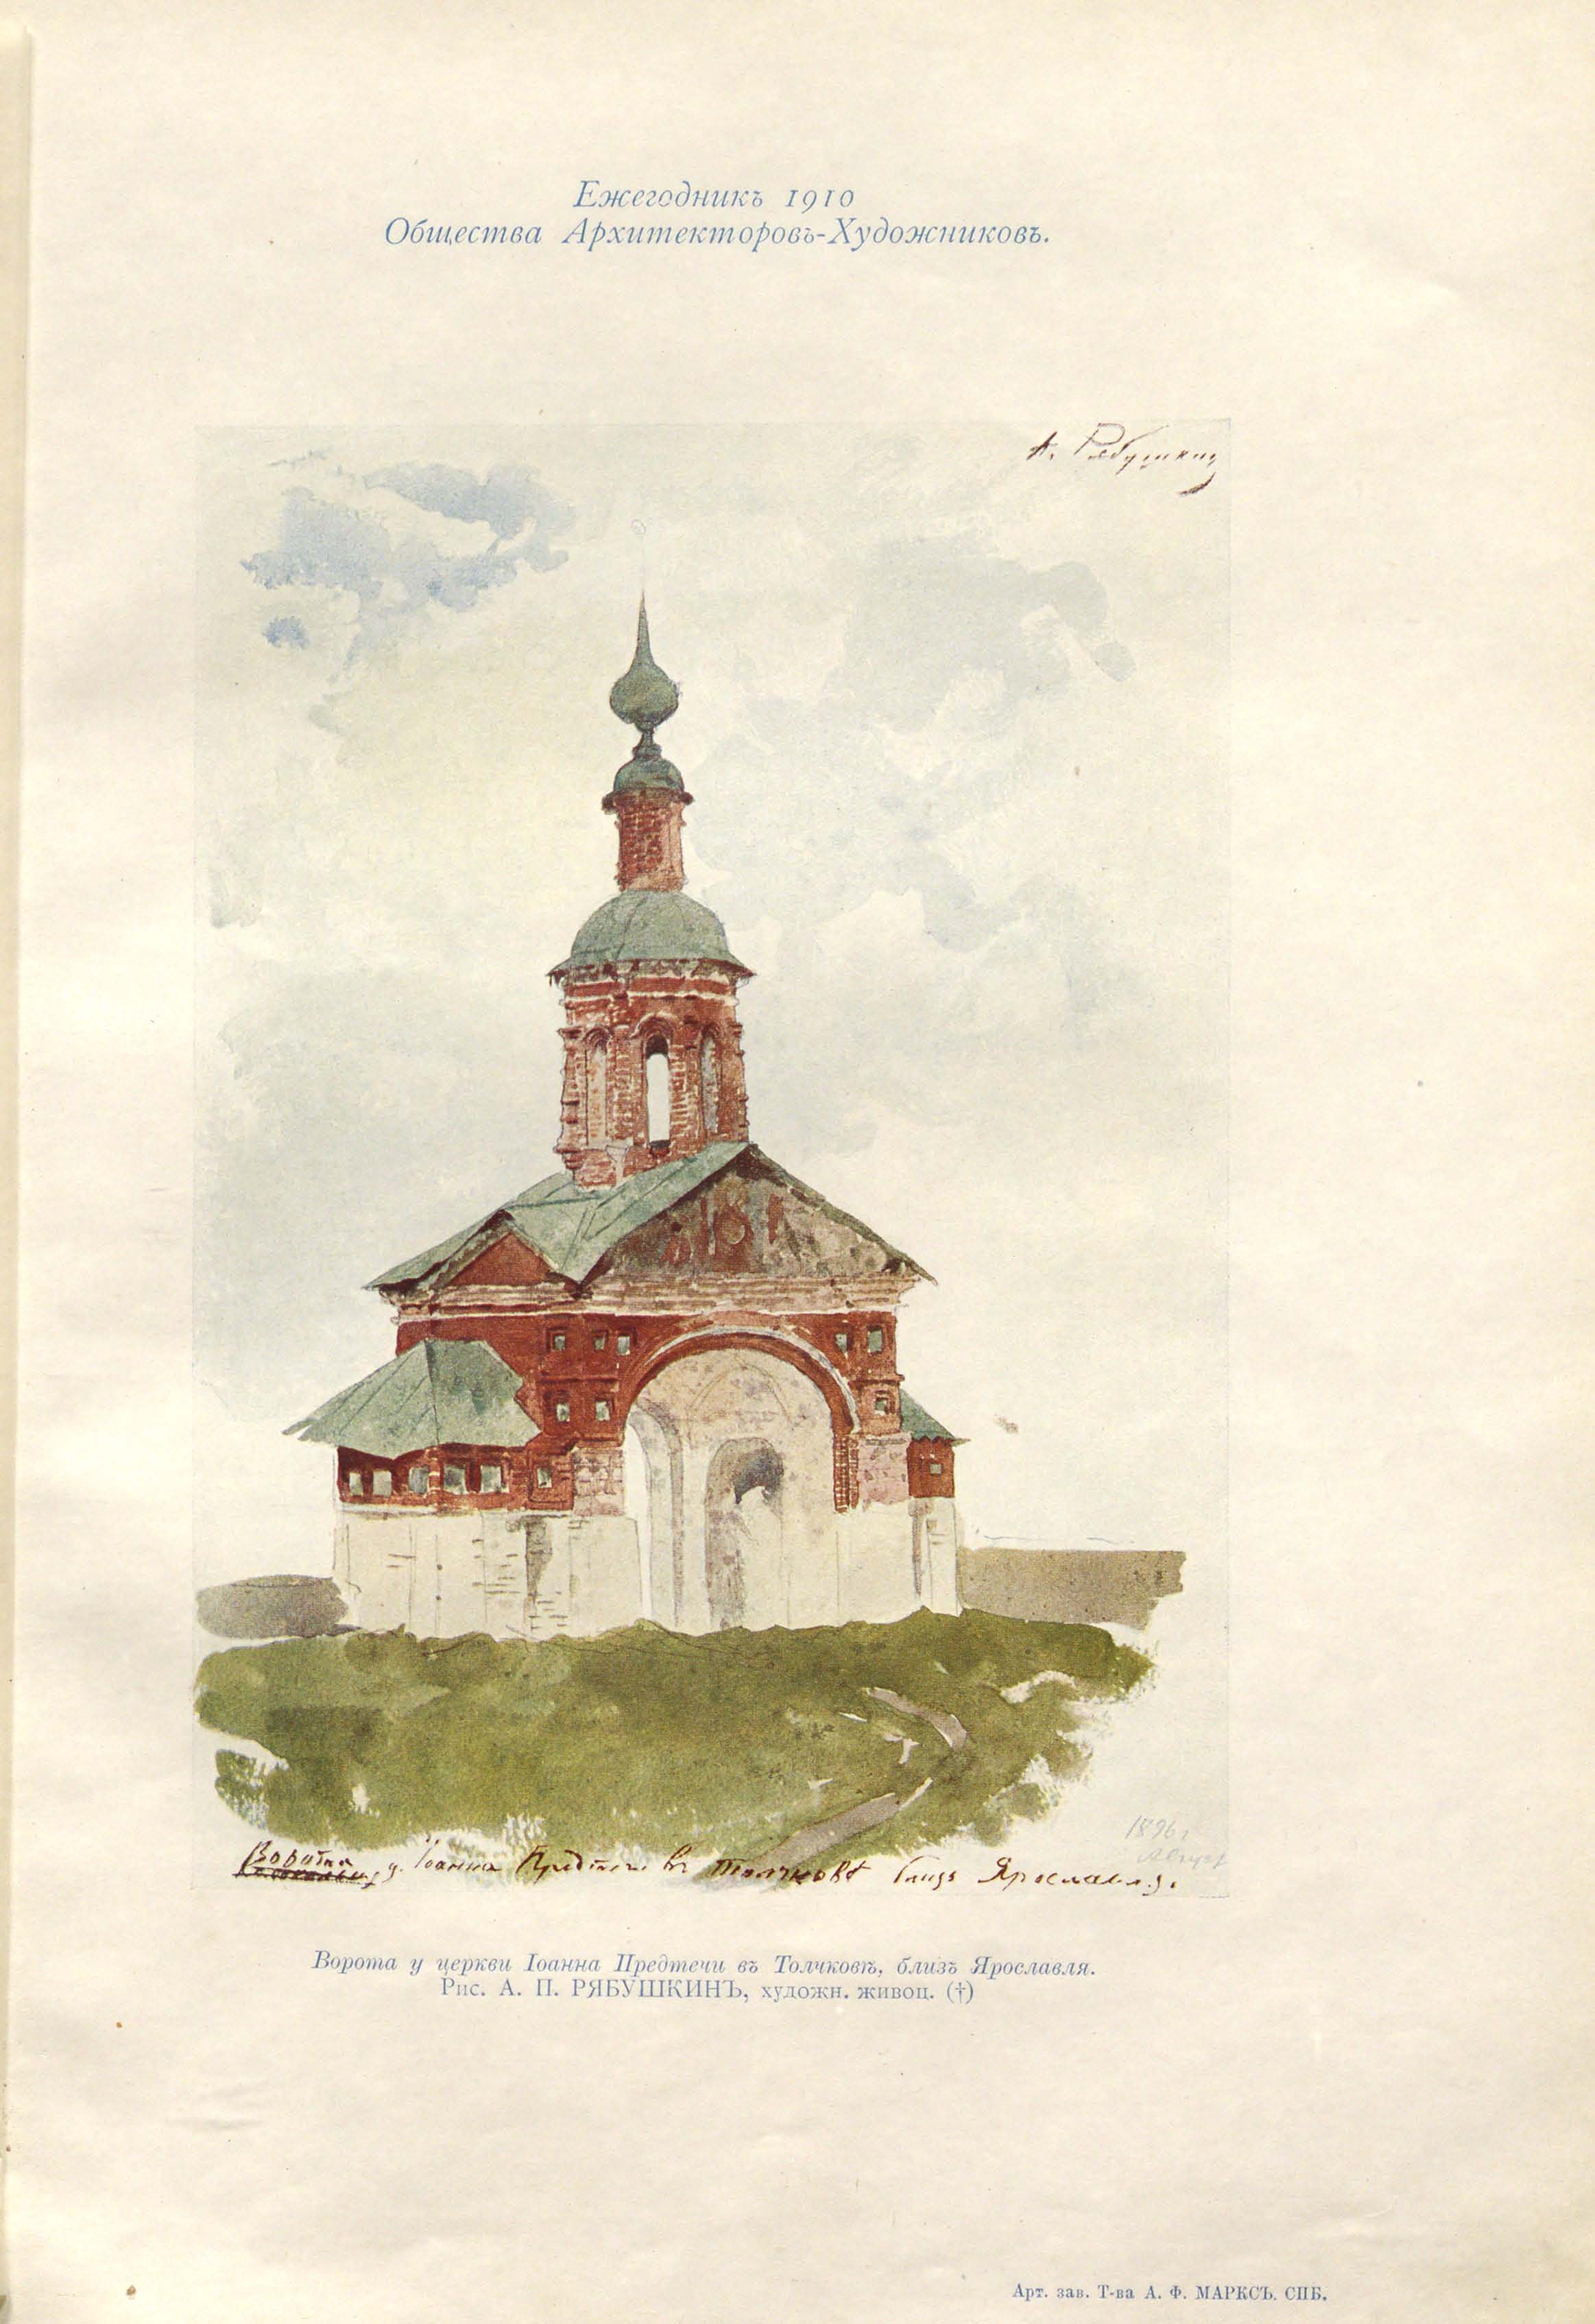 Рябушкин А. П. Ворота у церкви Иоанна Предтечи в Толчкове близ Ярославля